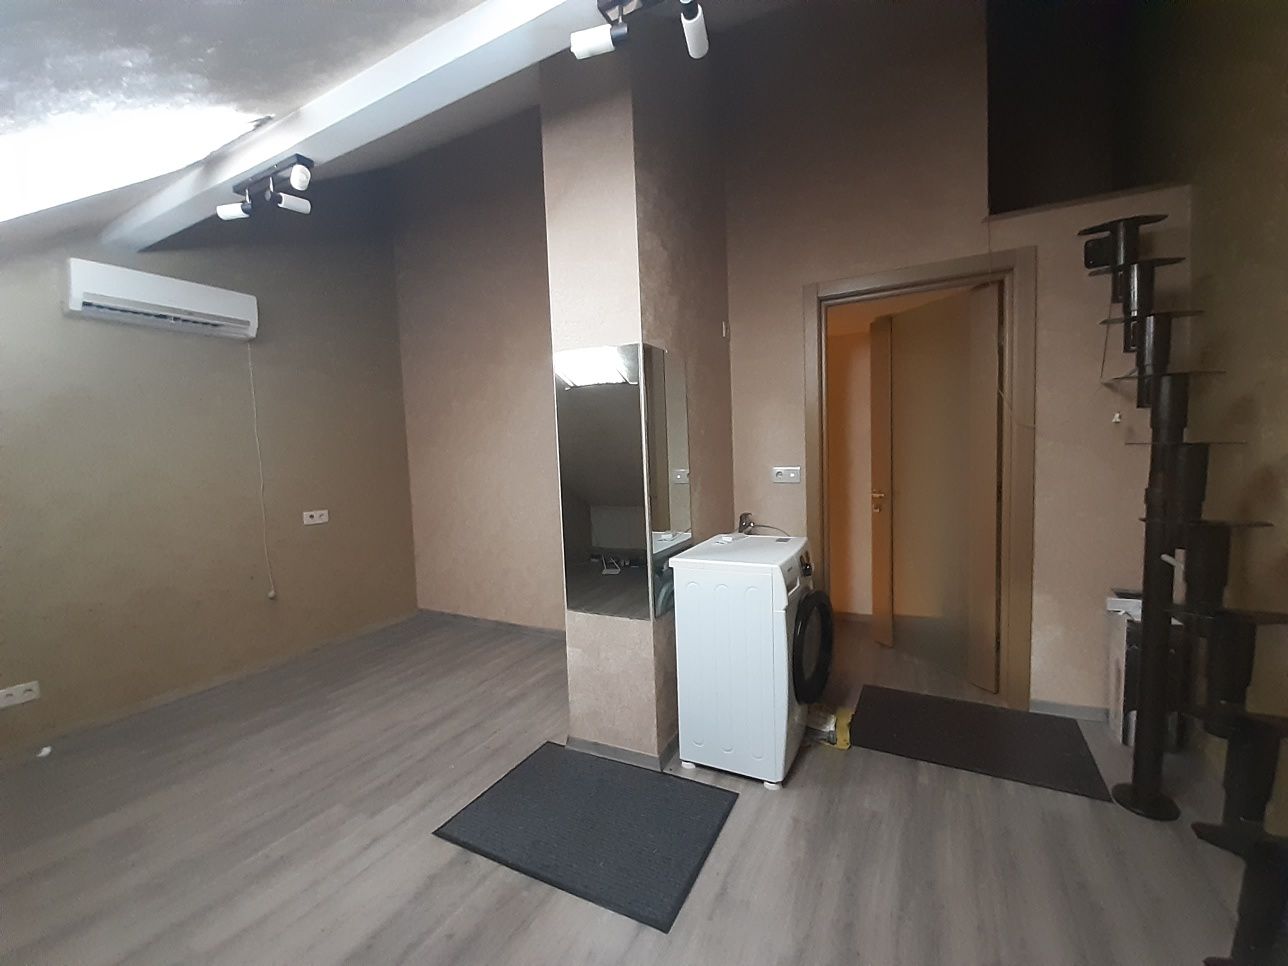 2-комнатная 2-х уровневая с мансардой в клубном доме Борисполь